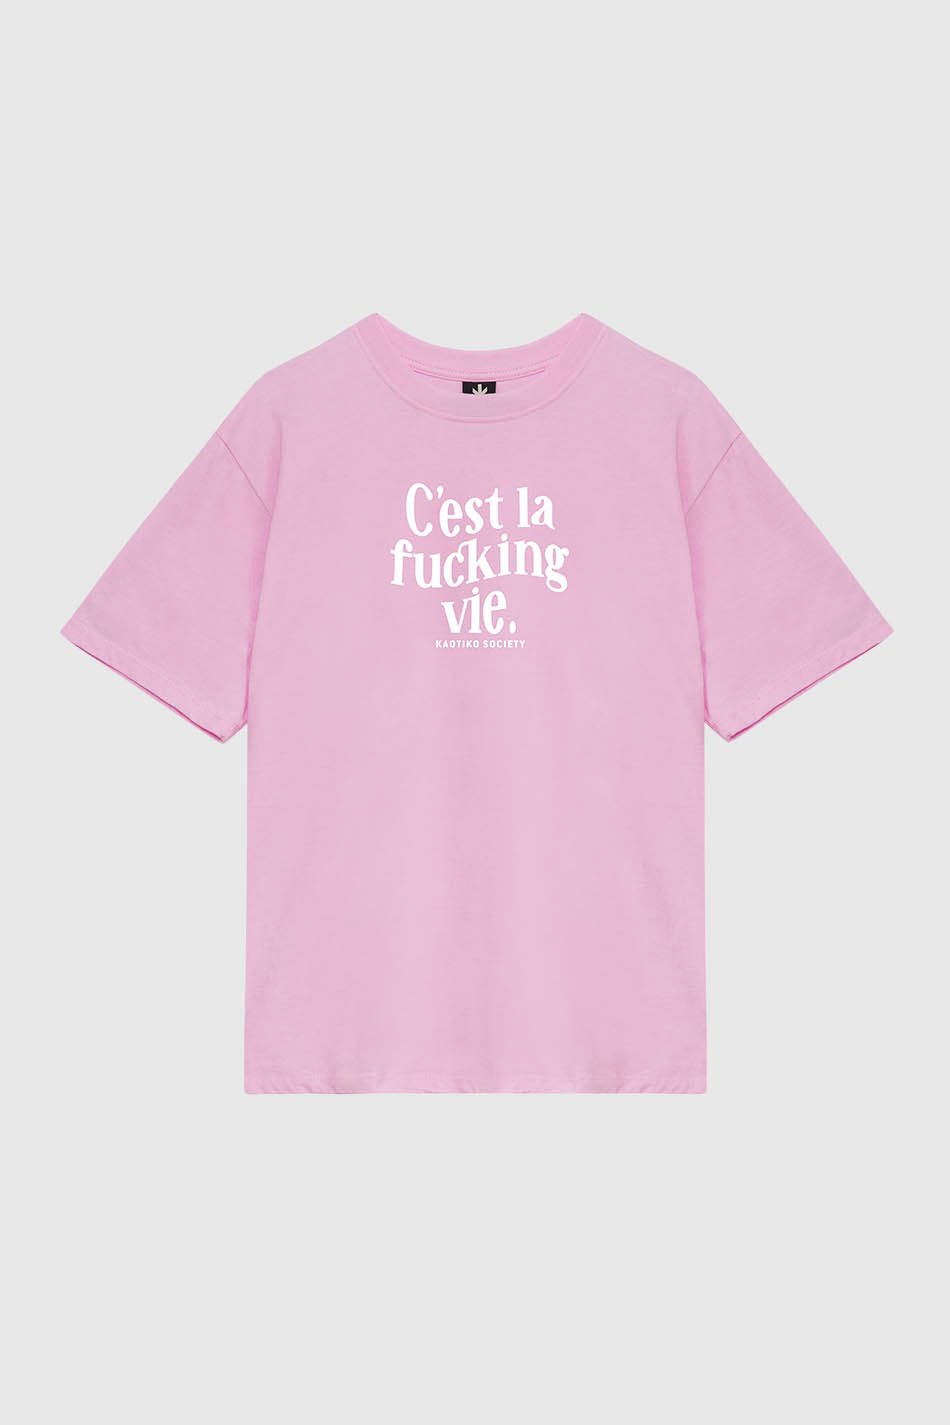 C'est La Vie Bubblegum Pink T-Shirt